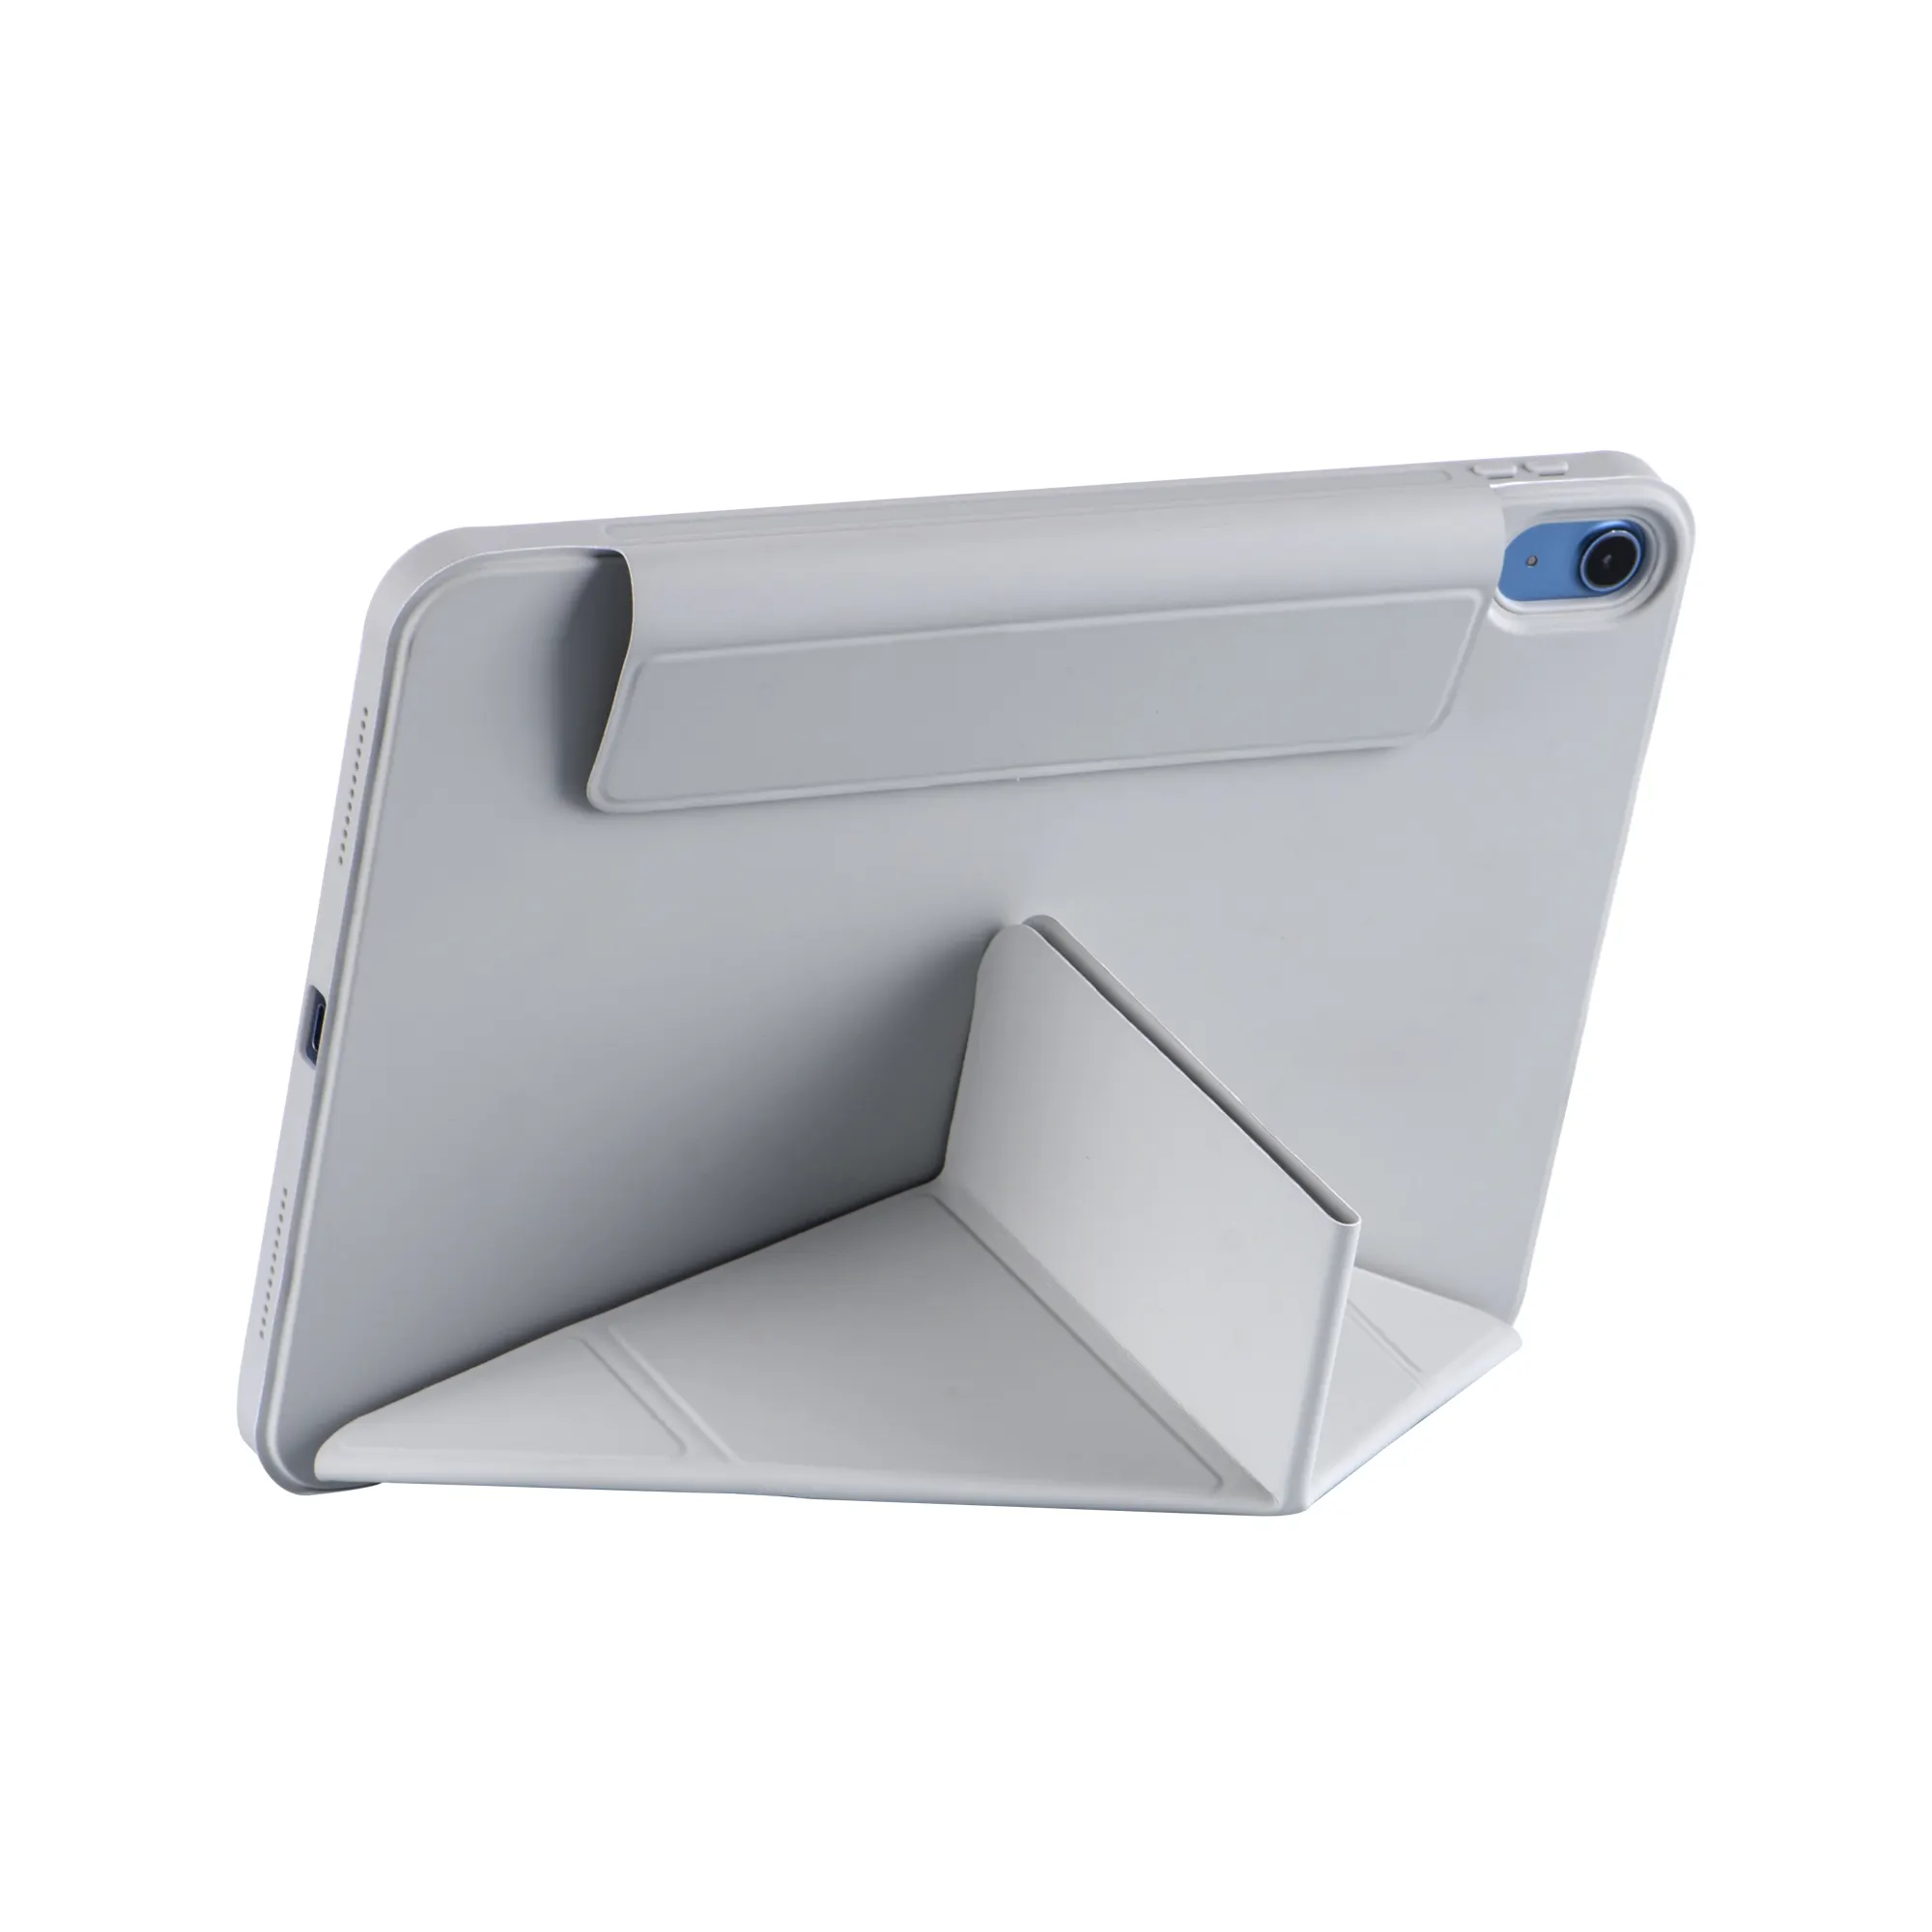 Регулируемый 11-дюймовый чехол для iPad Pro для 4-го и 3-го поколения, съемный магнитный кожаный чехол, подставка для портретного пейзажа